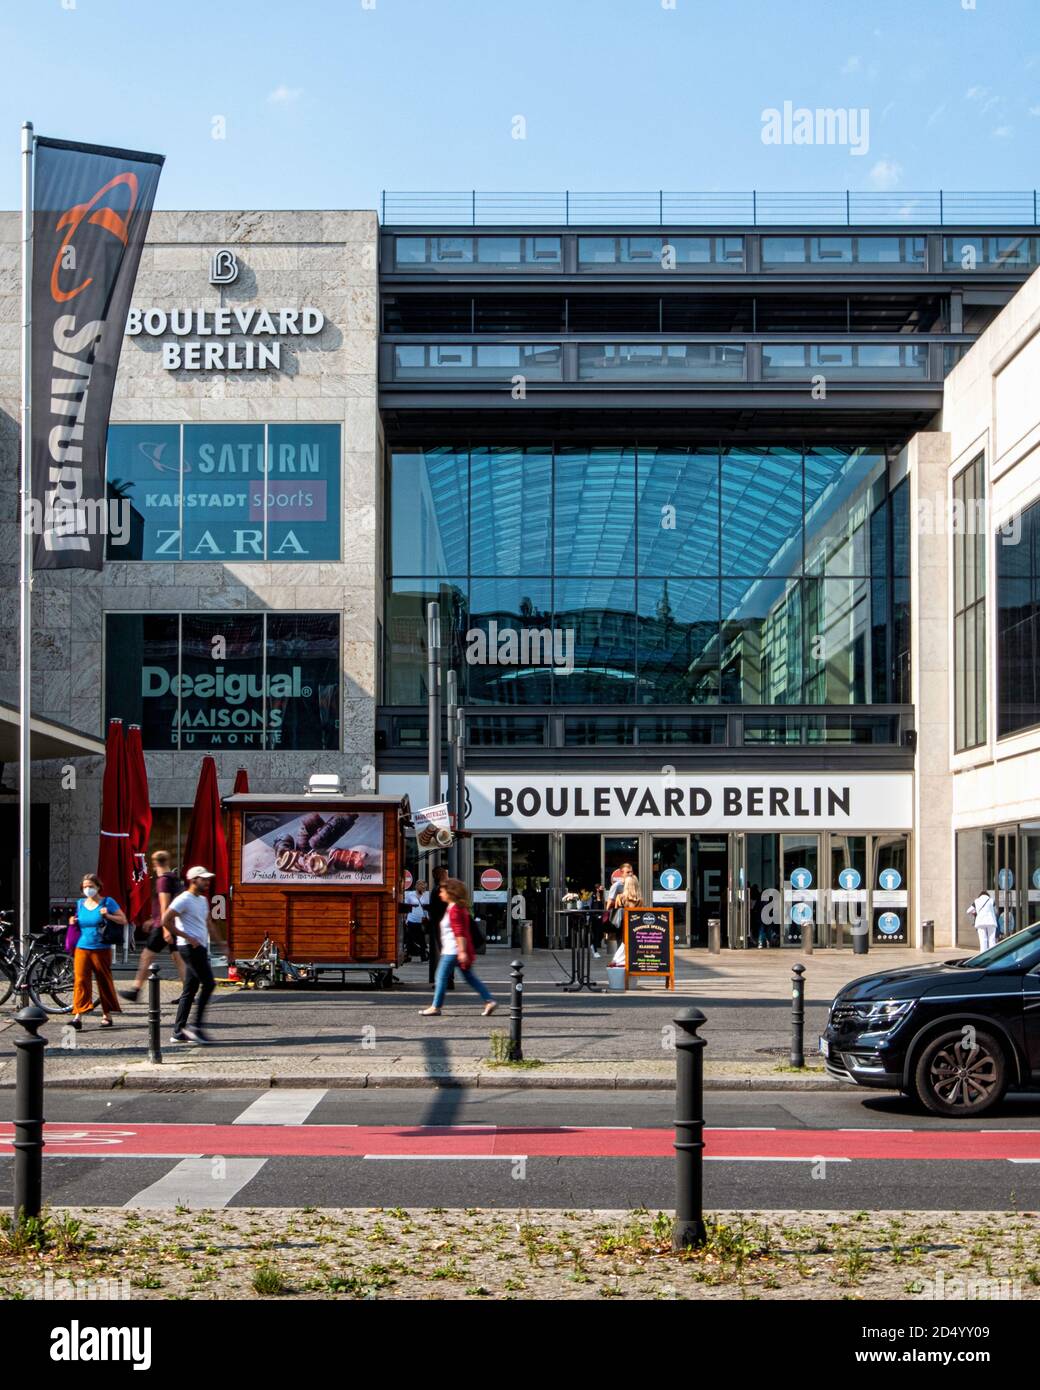 Boulevard Berlin - großes Einkaufszentrum an der Schloßstraße 10, Steglitz, Berlin. Außenansicht des Einkaufszentrums Stockfoto